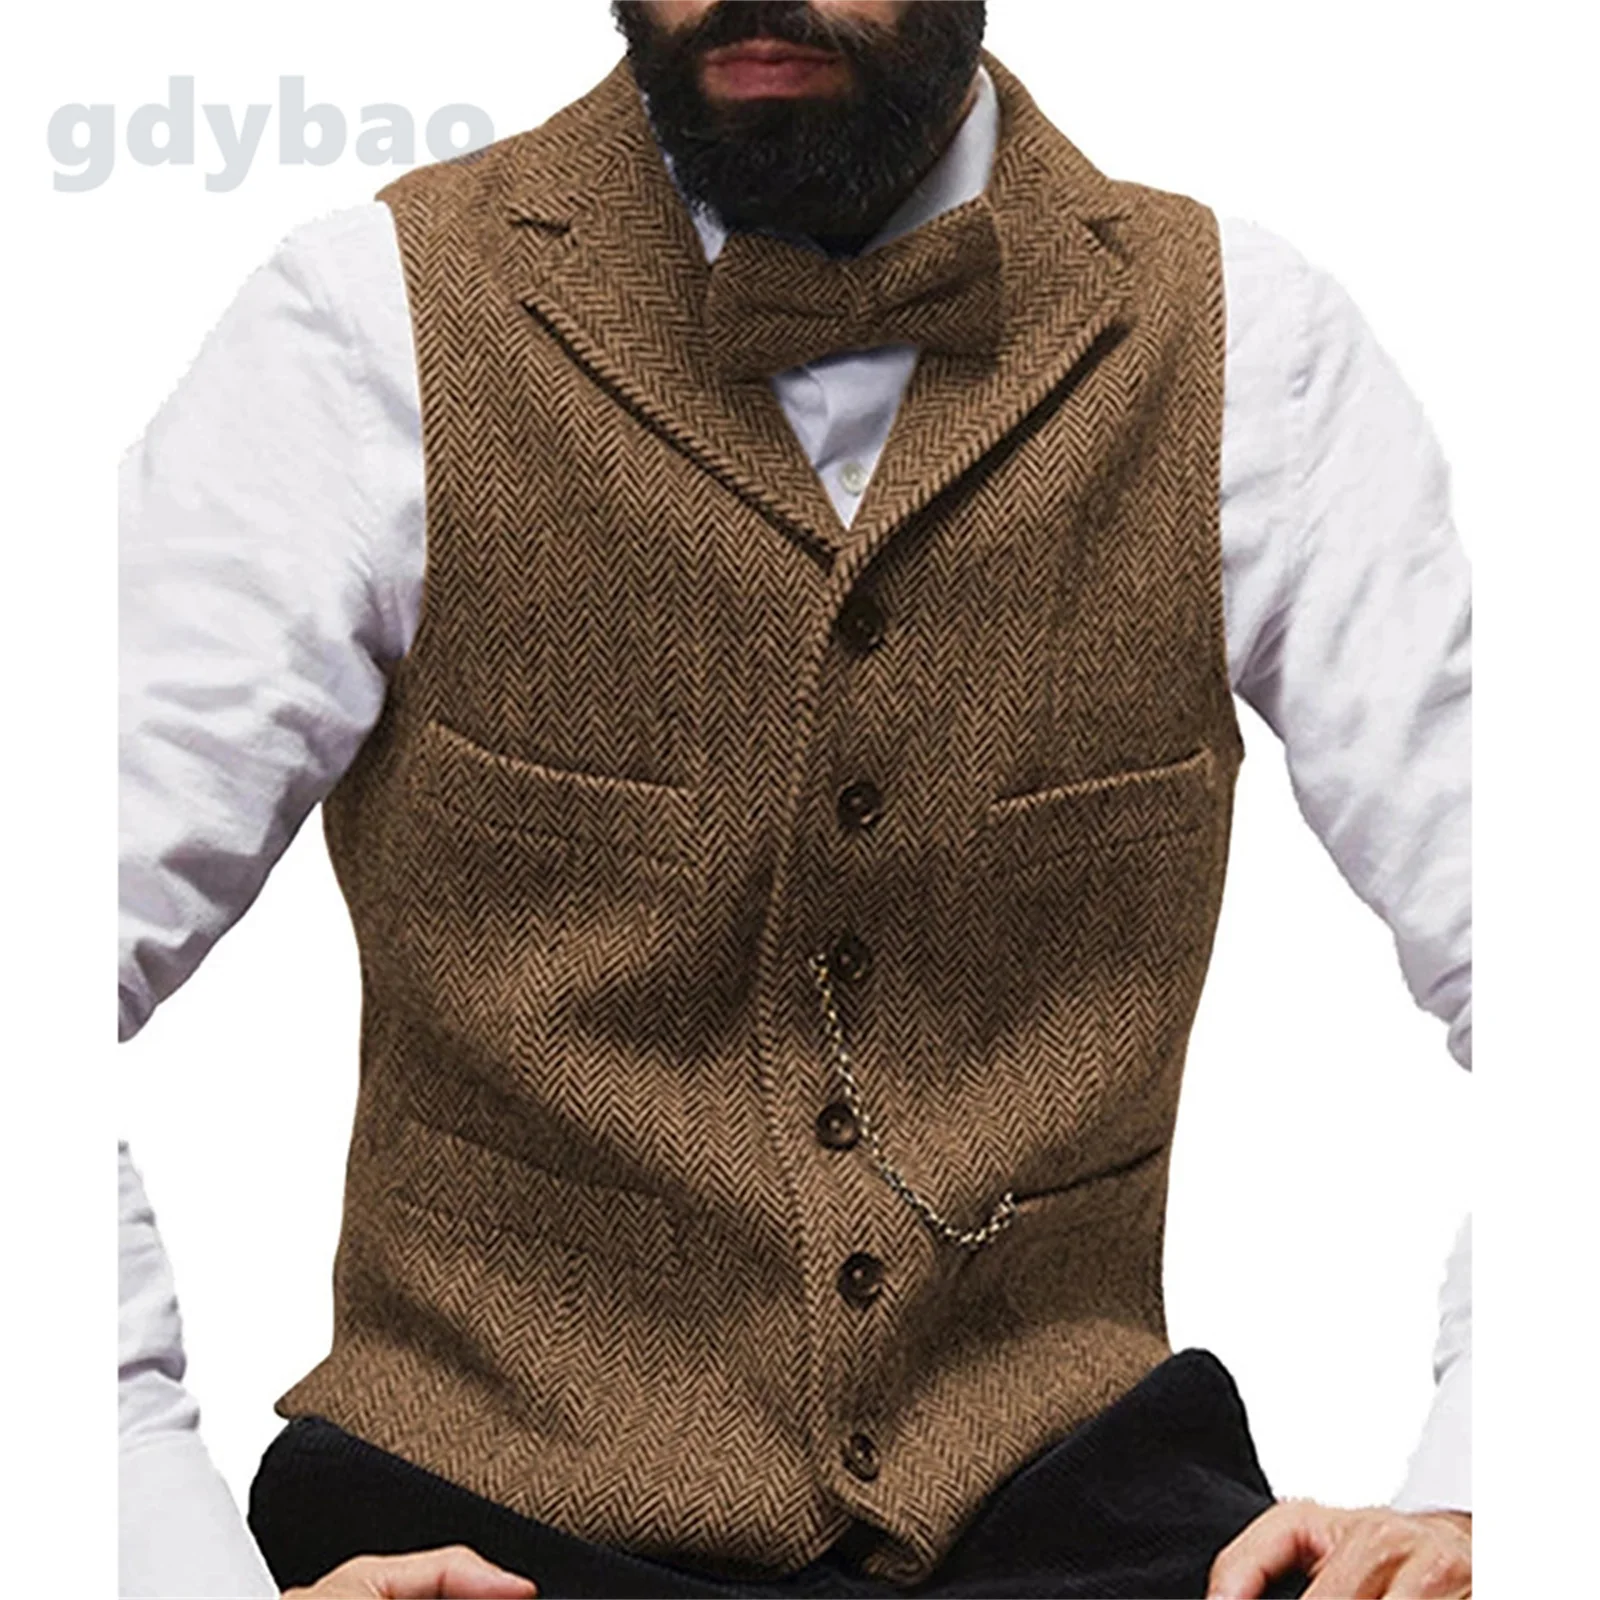 

Jason Business Waistcoat Jacket Casual Slim Fit Gilet Homme Vests For Groosmen Man Wedding Men's Suit Vest Brown Wool Tweed